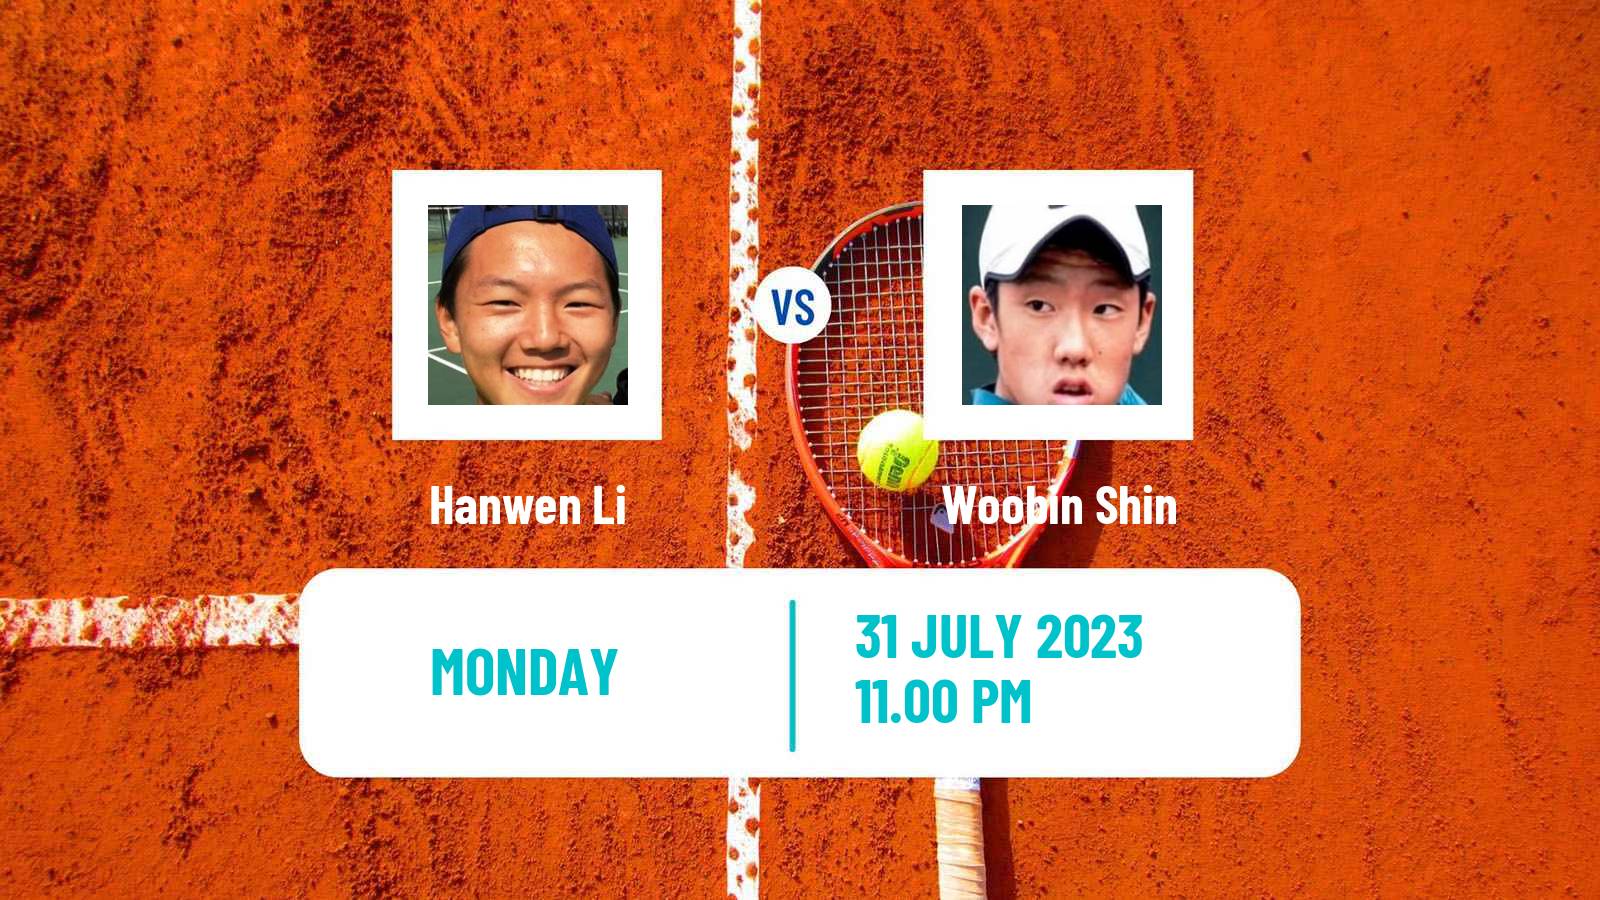 Tennis ITF M25 Anning Men Hanwen Li - Woobin Shin